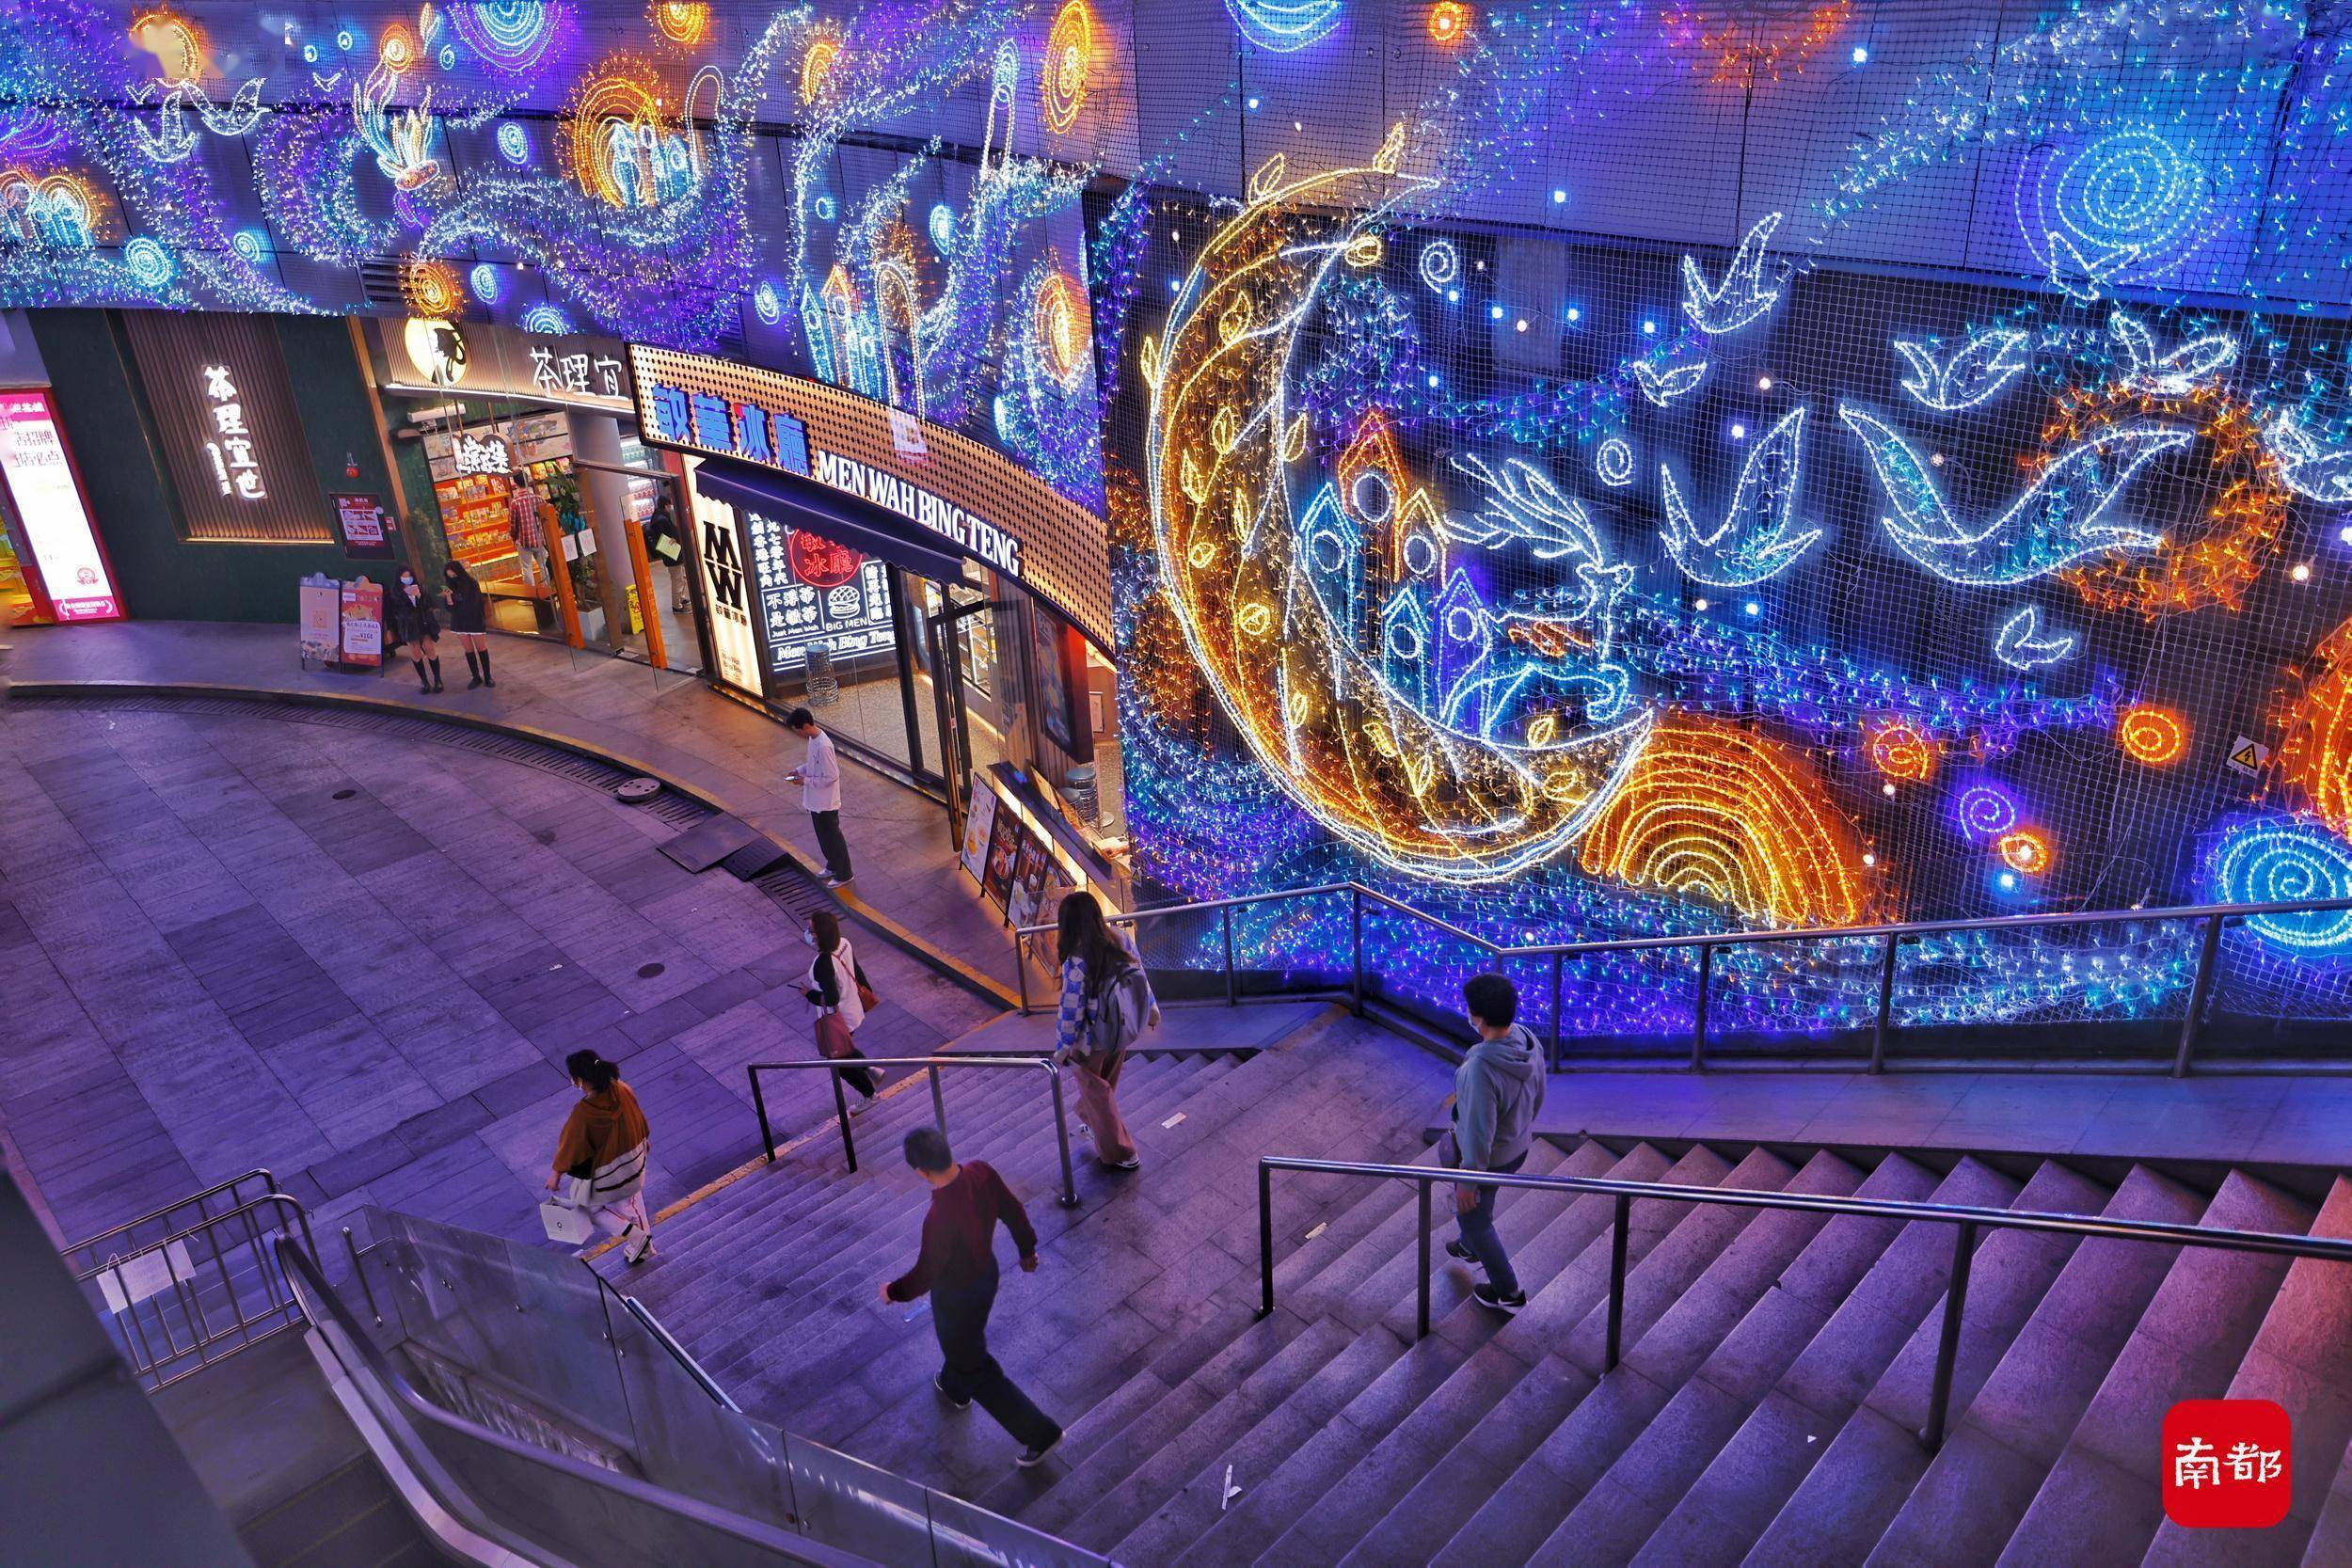 2022年1月6日,沙园地铁站出口,乐峰广场周边全部用霓虹灯装饰,五彩